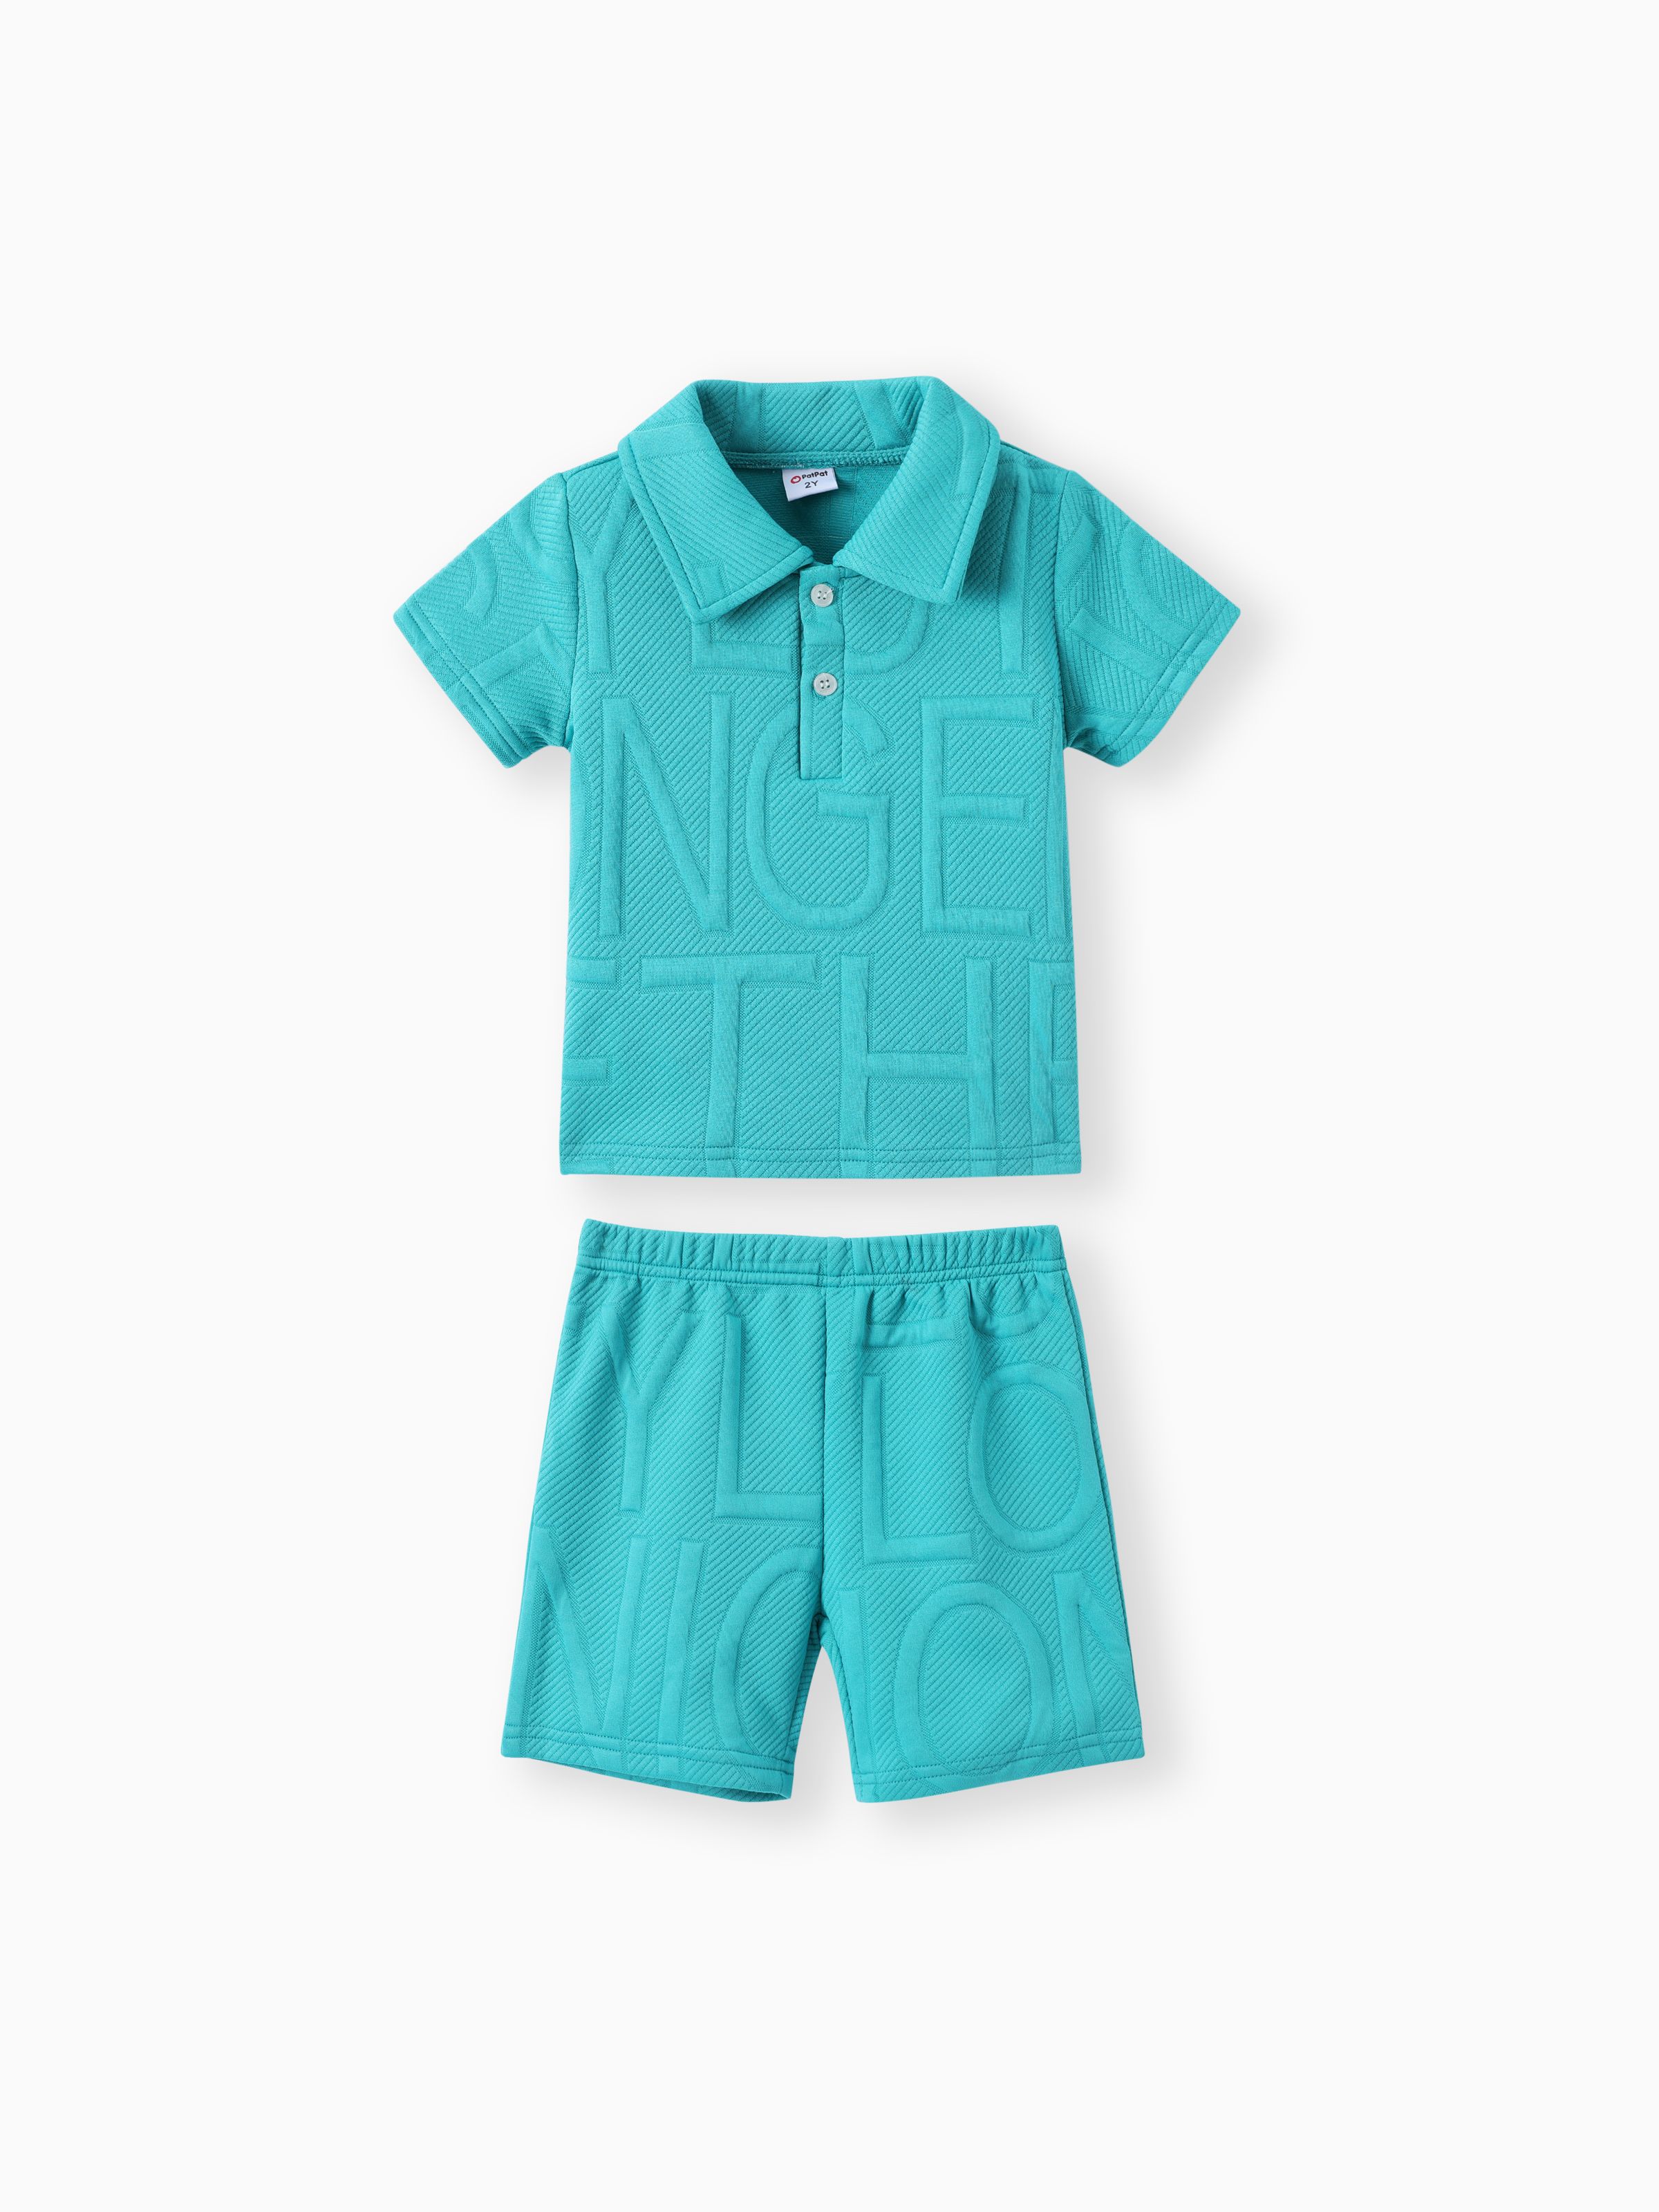 

Boy's 2pcs Polyester Polo Set - Solid Color Shirt Collar Toddler's Avant-garde